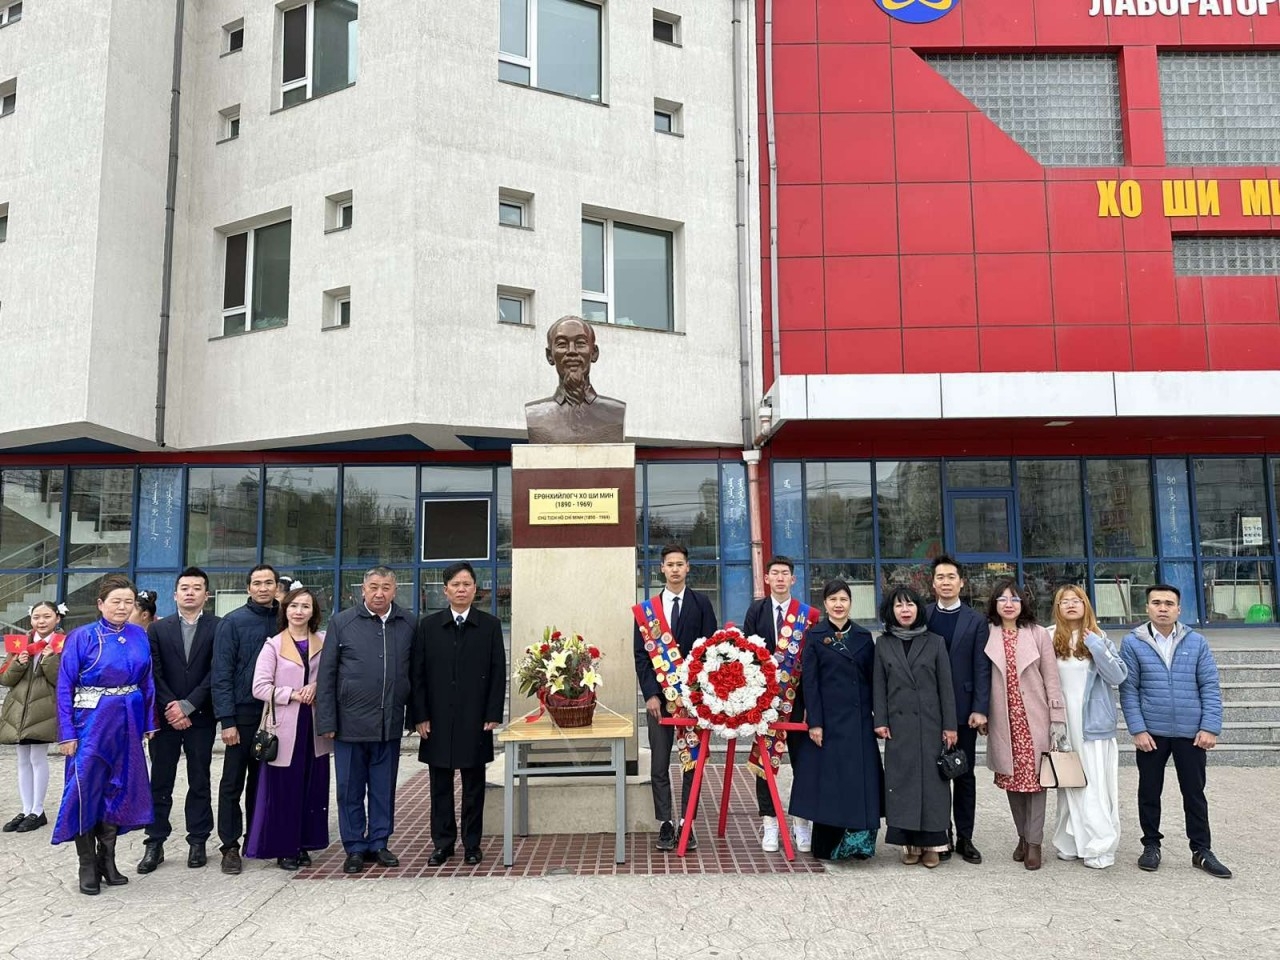 越南驻蒙古大使馆全体干部人员、留学生及越南社区代表前往以胡志明主席为名的14号学校献花缅怀胡志明主席。